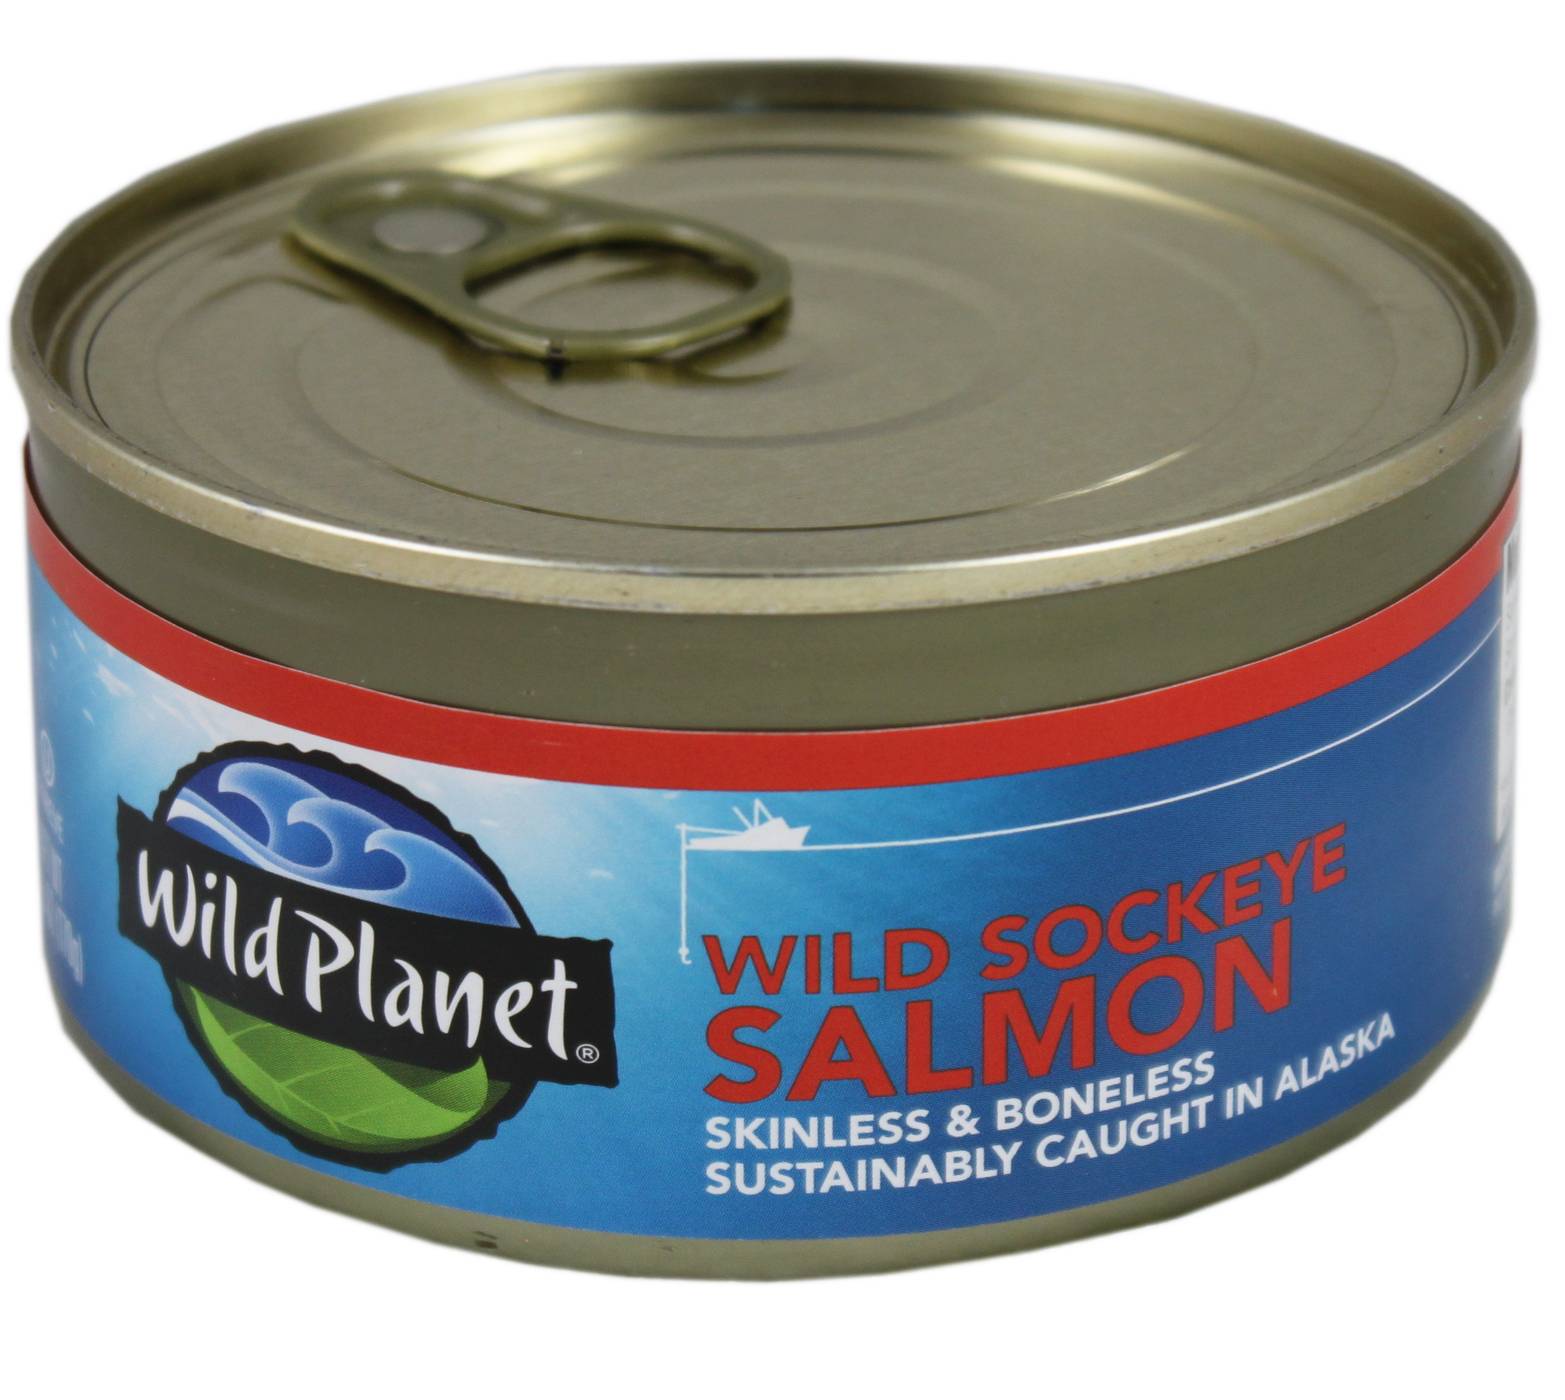 Wild Planet Wild Sockeye Salmon; image 1 of 2